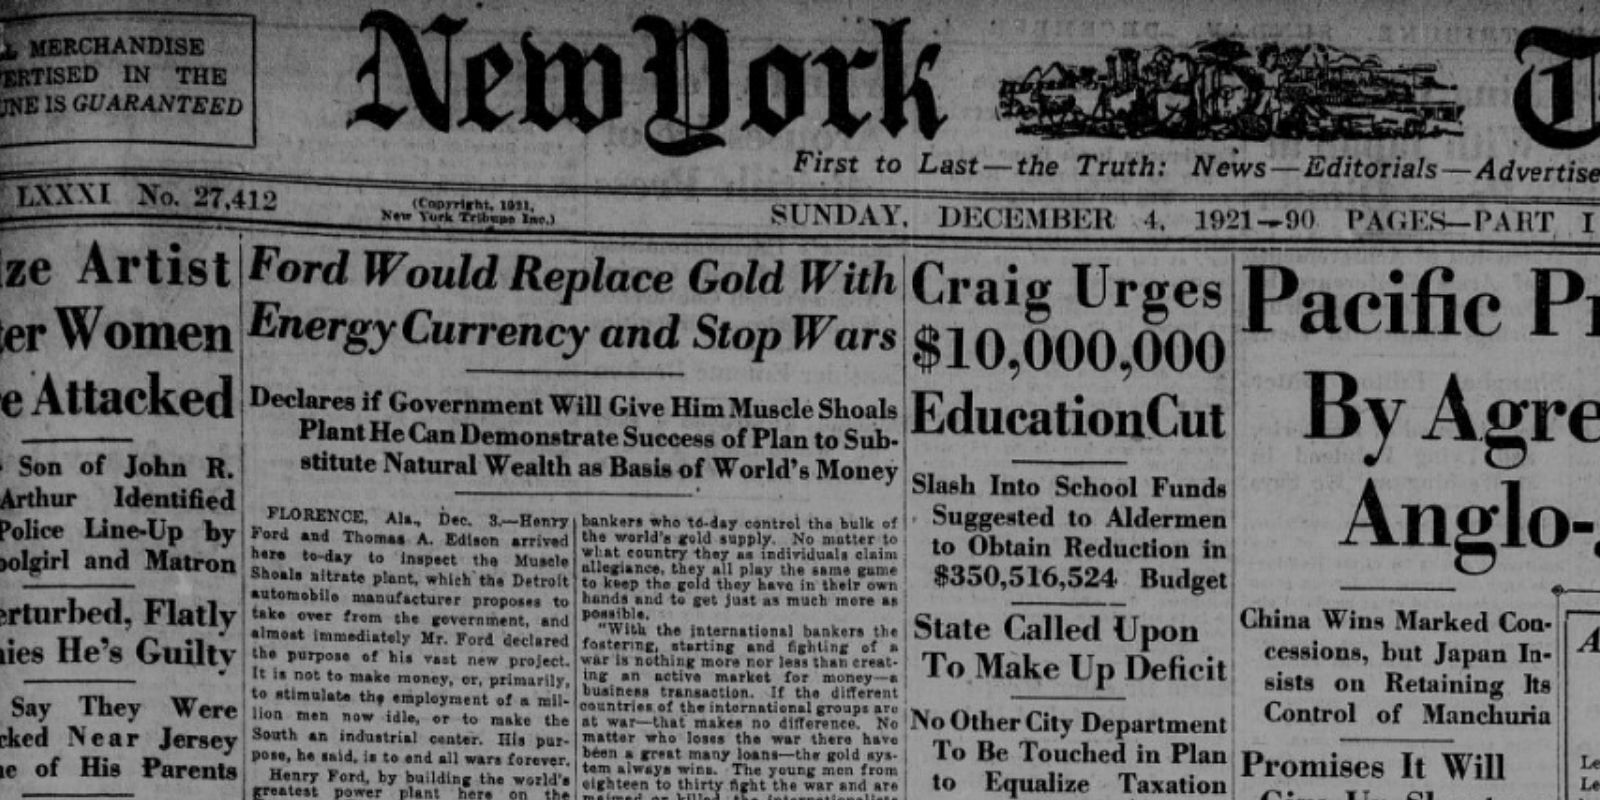 Une du NY Tribune du 4 décembre 1921 à propos de la monnaie énergie de Ford